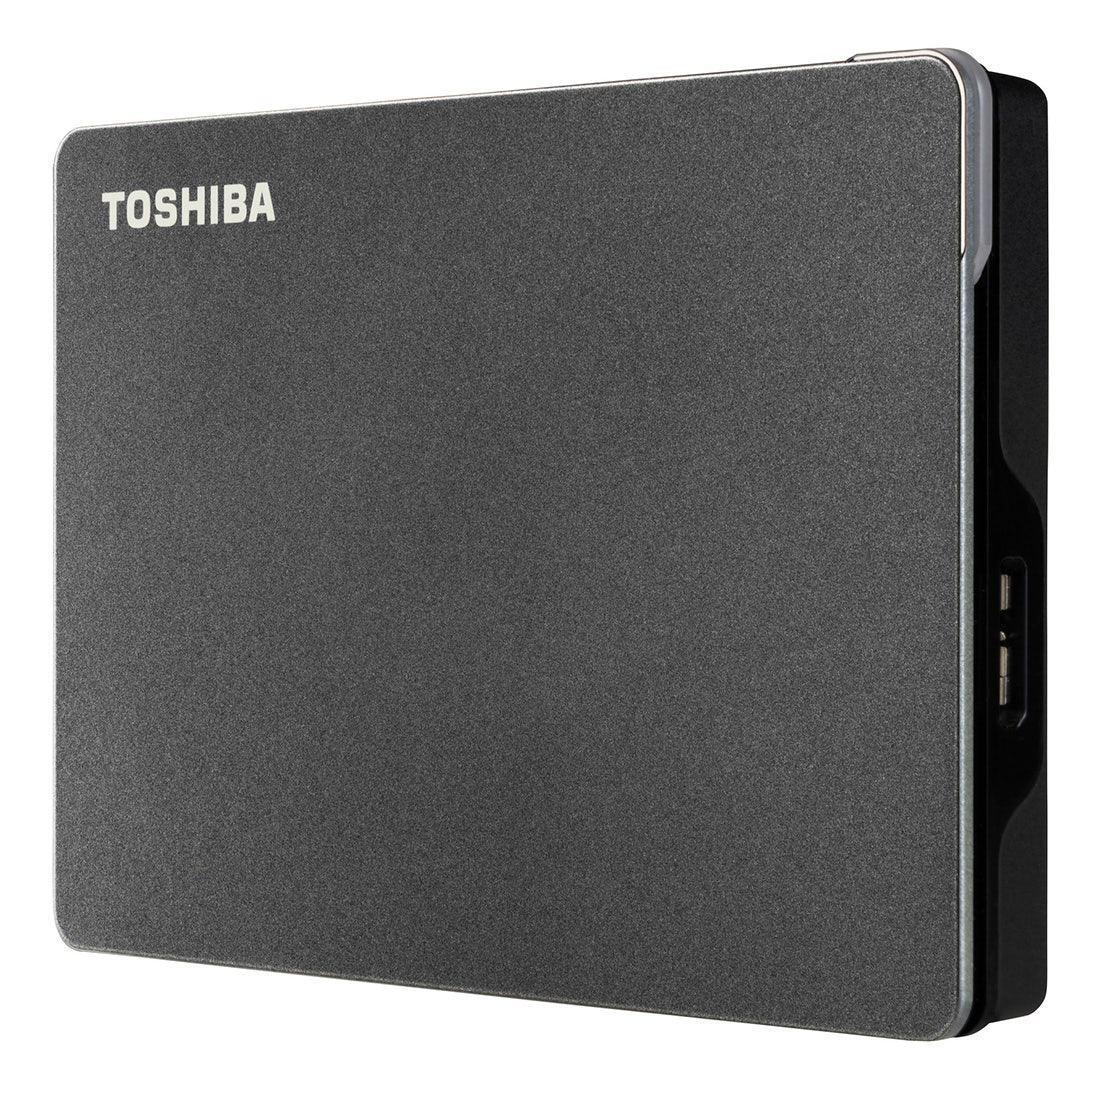 HD Externo Toshiba 2TB Canvio Gaming Preto - HDTX120XK3AA I - Mega Market